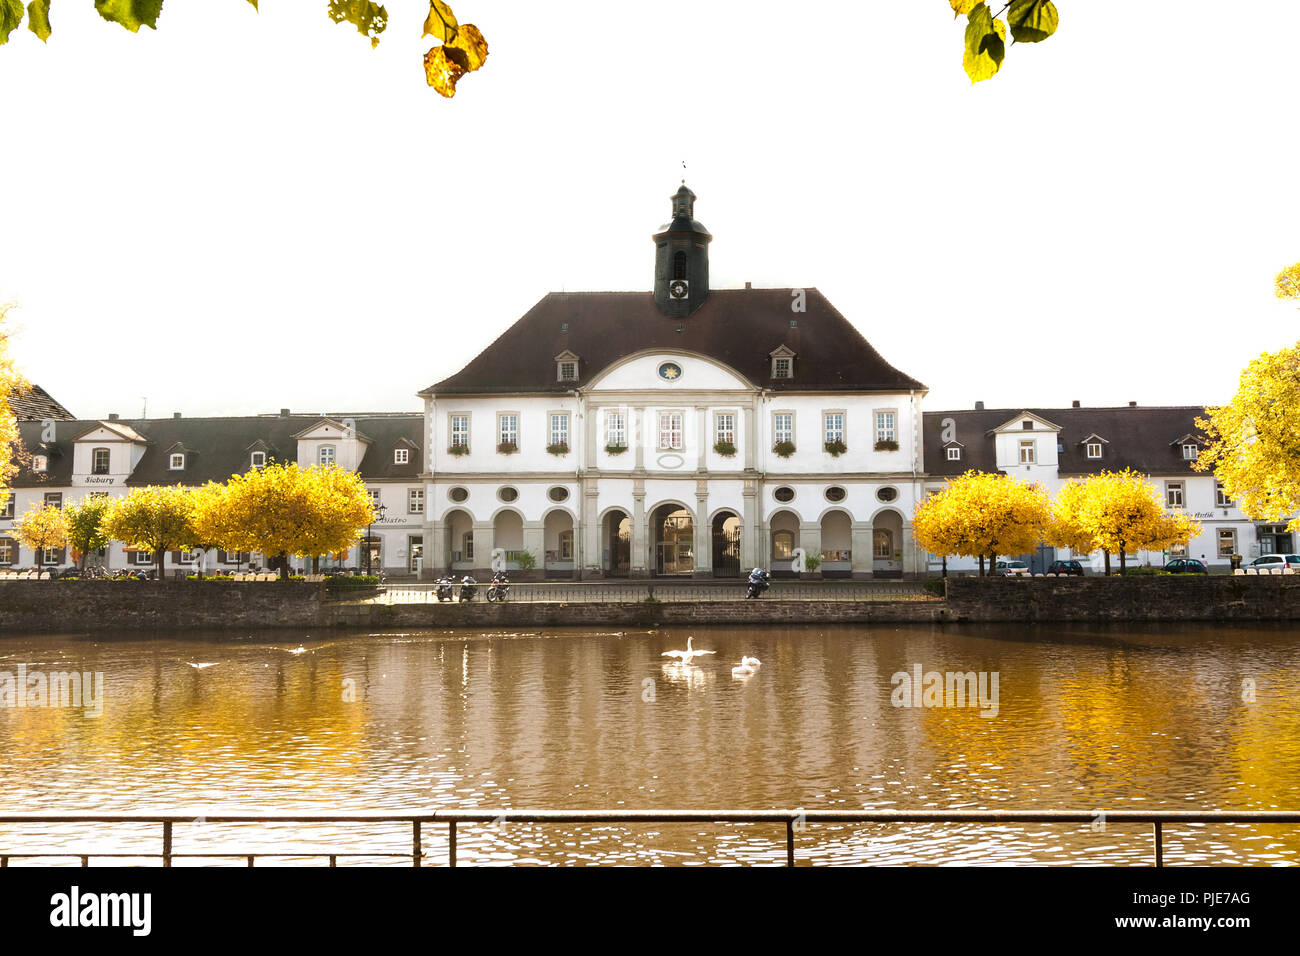 Une photo de l'hôtel de ville de la ville baroque de Bad Karlshafen, Hessen, Allemagne sur une journée ensoleillée d'automne de rêve où tous les arbres ont des feuilles jaunes et des... Banque D'Images